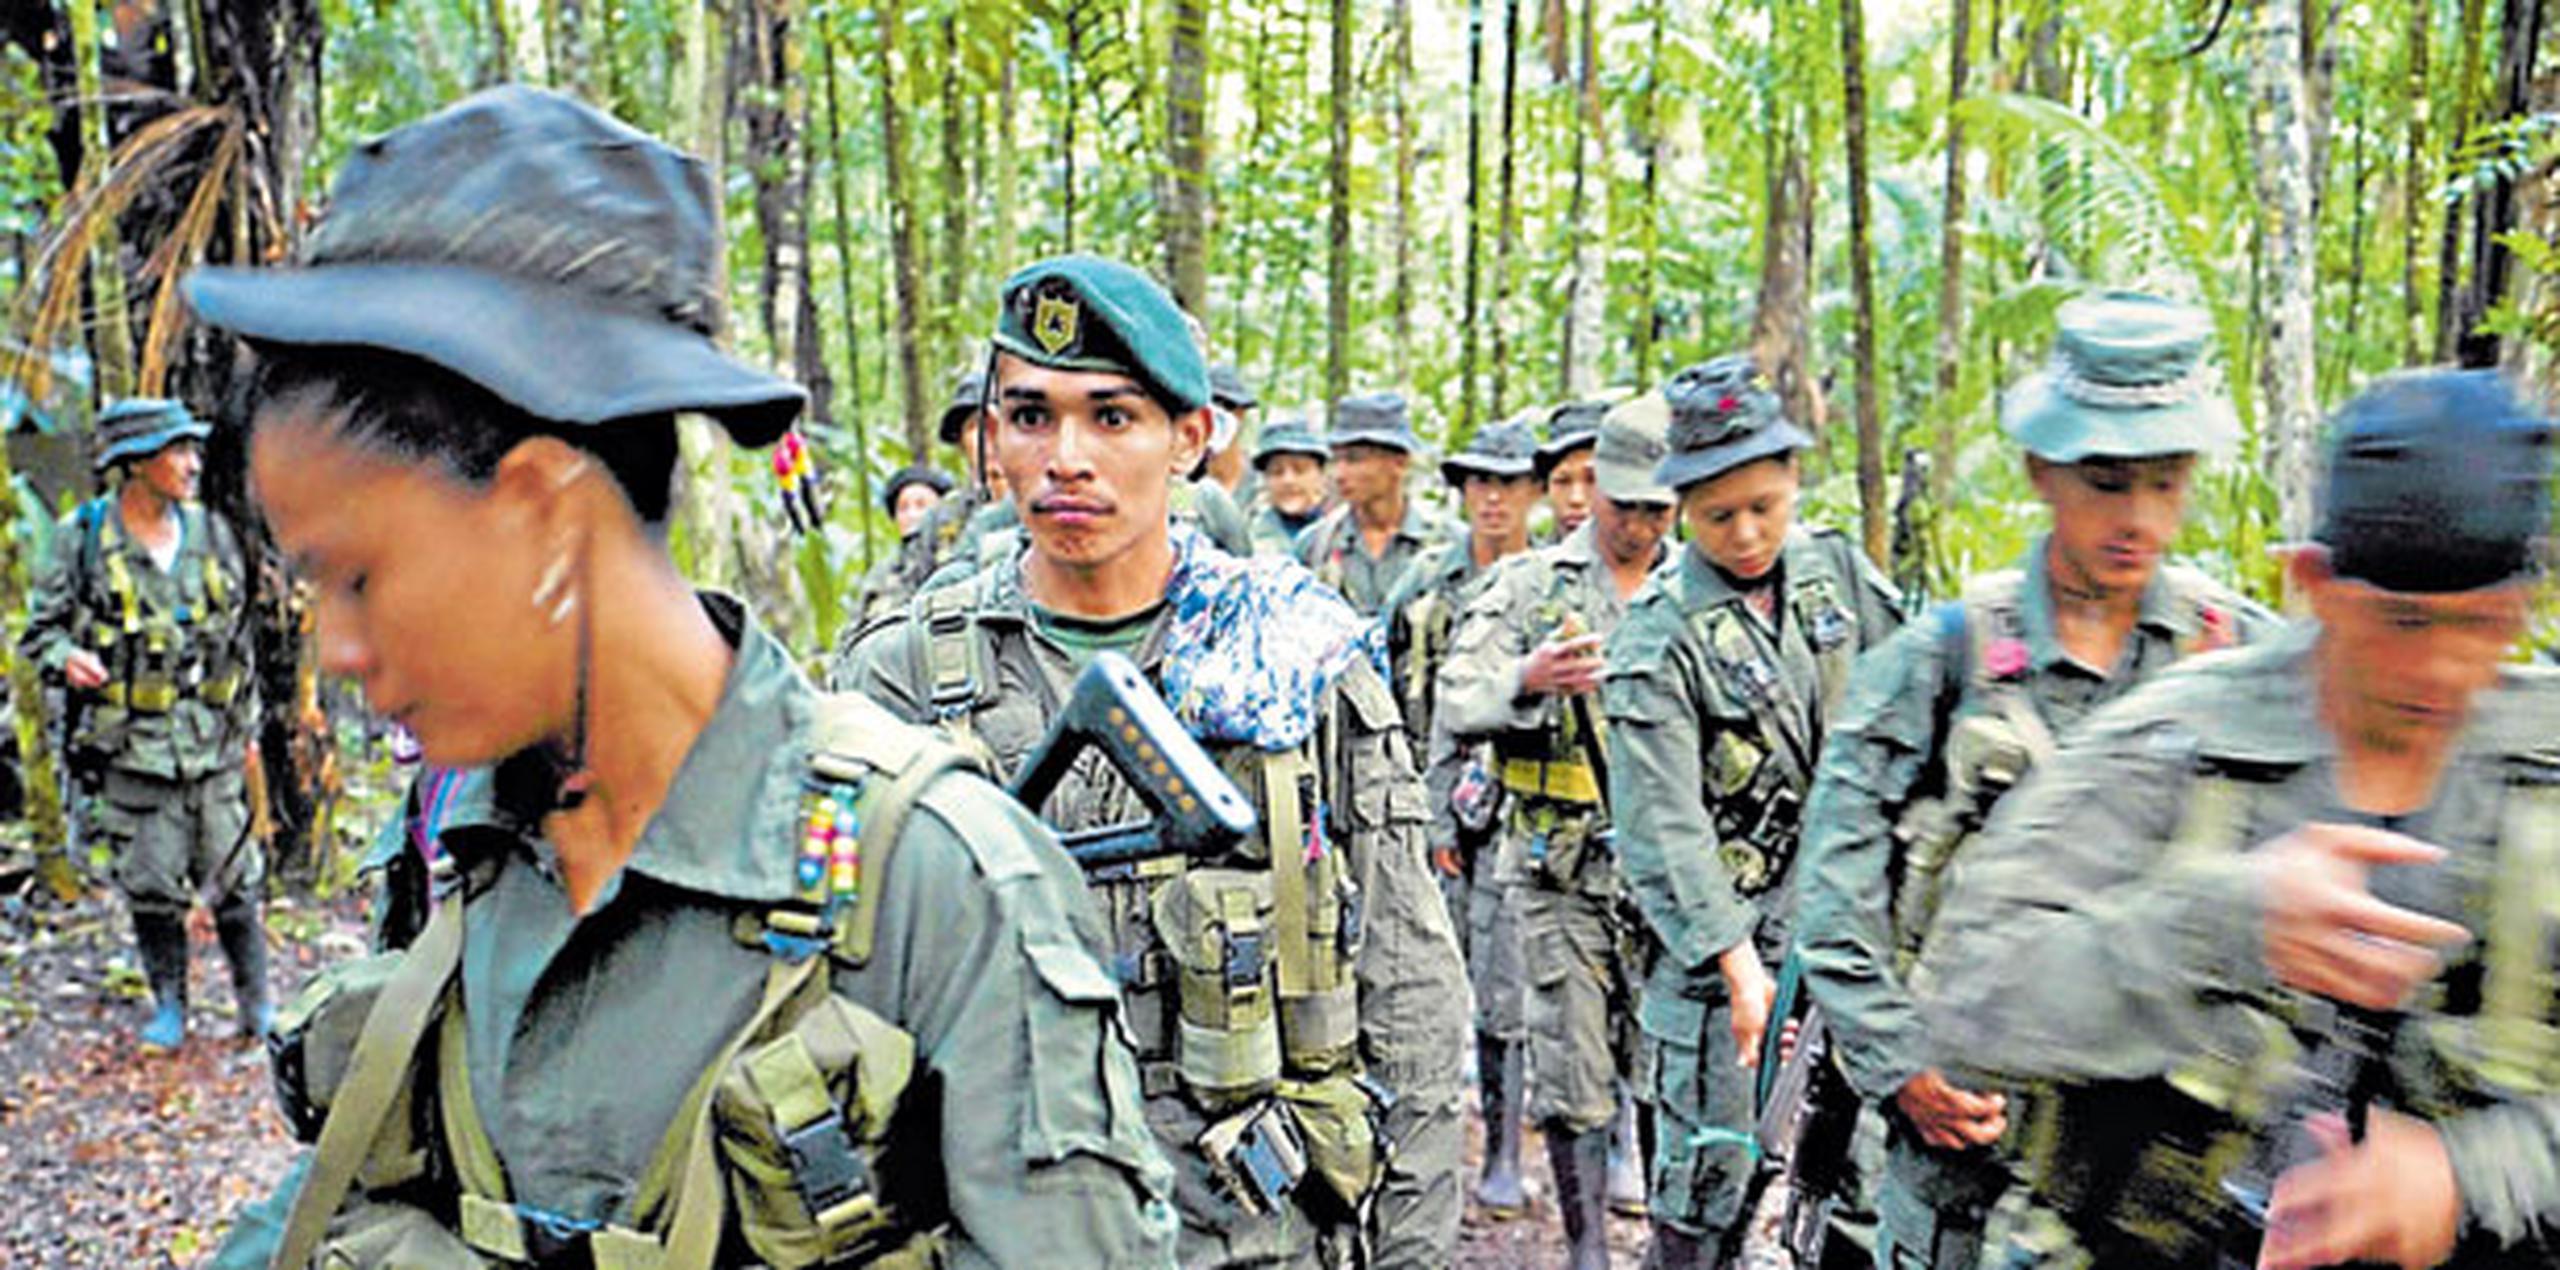 El Gobierno colombiano y las FARC rubricaron el acuerdo de paz el pasado 24 de agosto y será firmado en un acto solemne el próximo 26 de septiembre en Cartagena. (GDA)